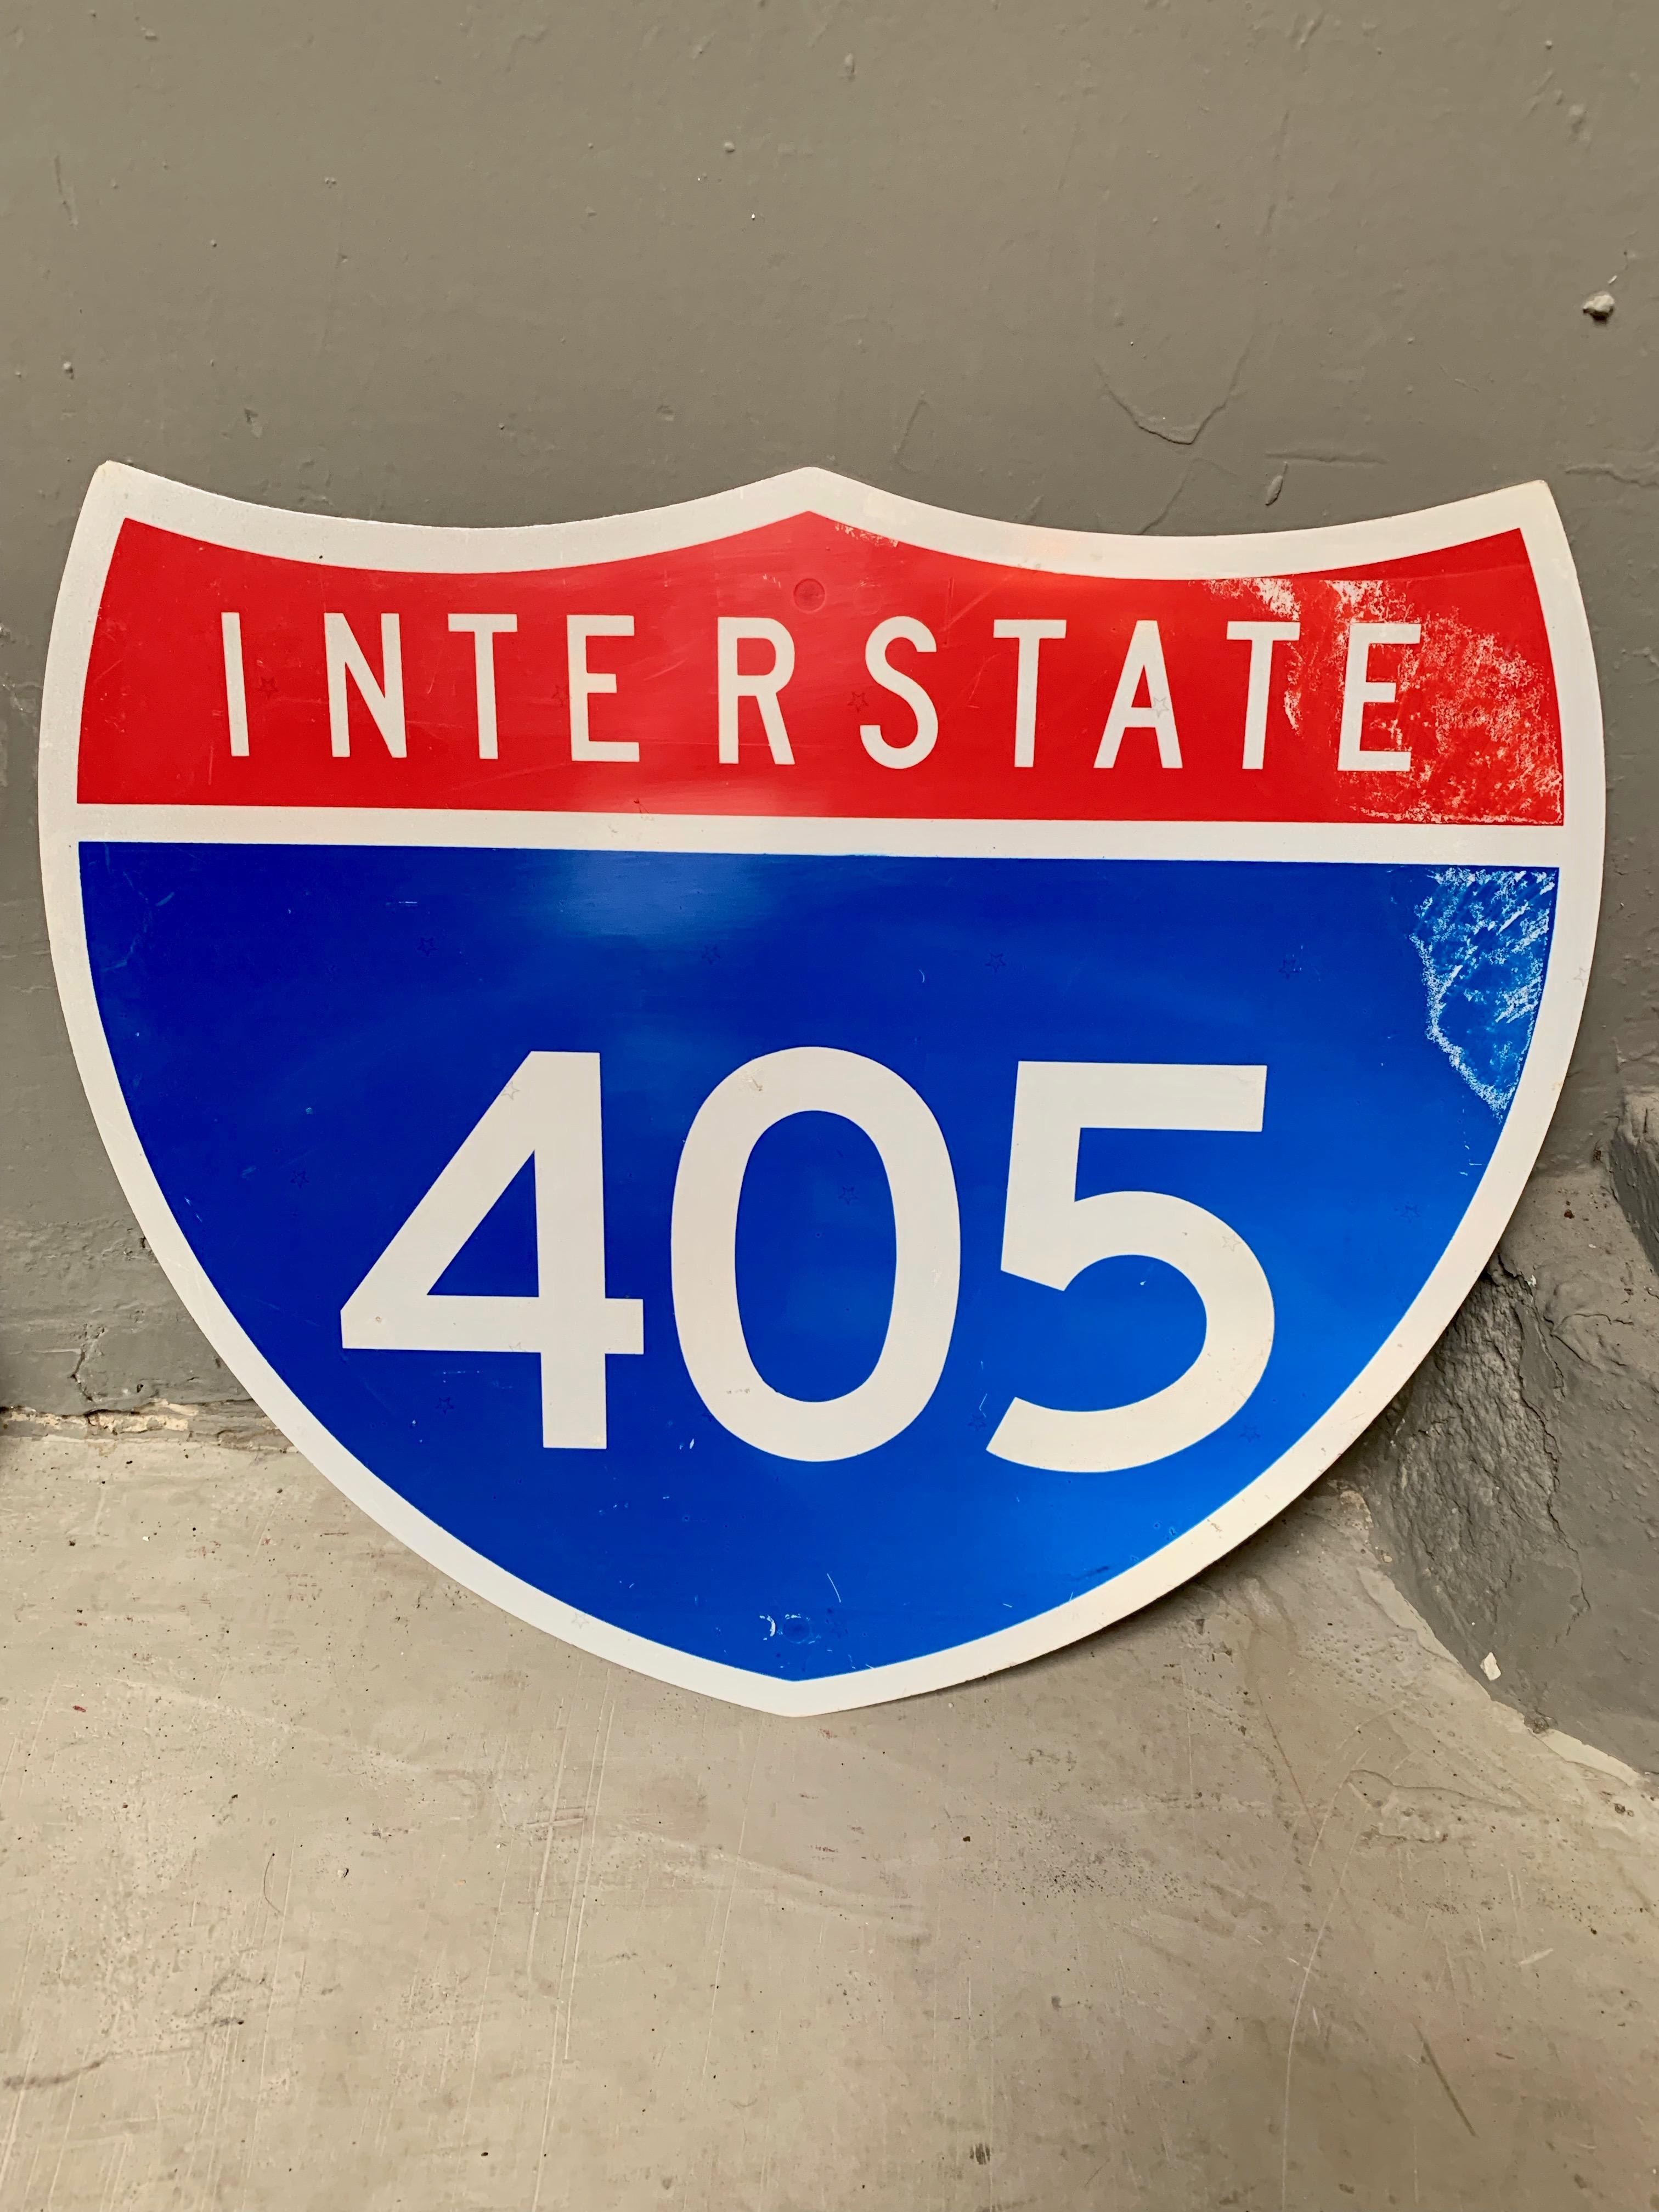 Panneau d'autoroute de l'Interstate 405. Un bel exemple de signalisation de la Californie. Bon état vintage. De petites étoiles sont imprimées sur le panneau métallique.